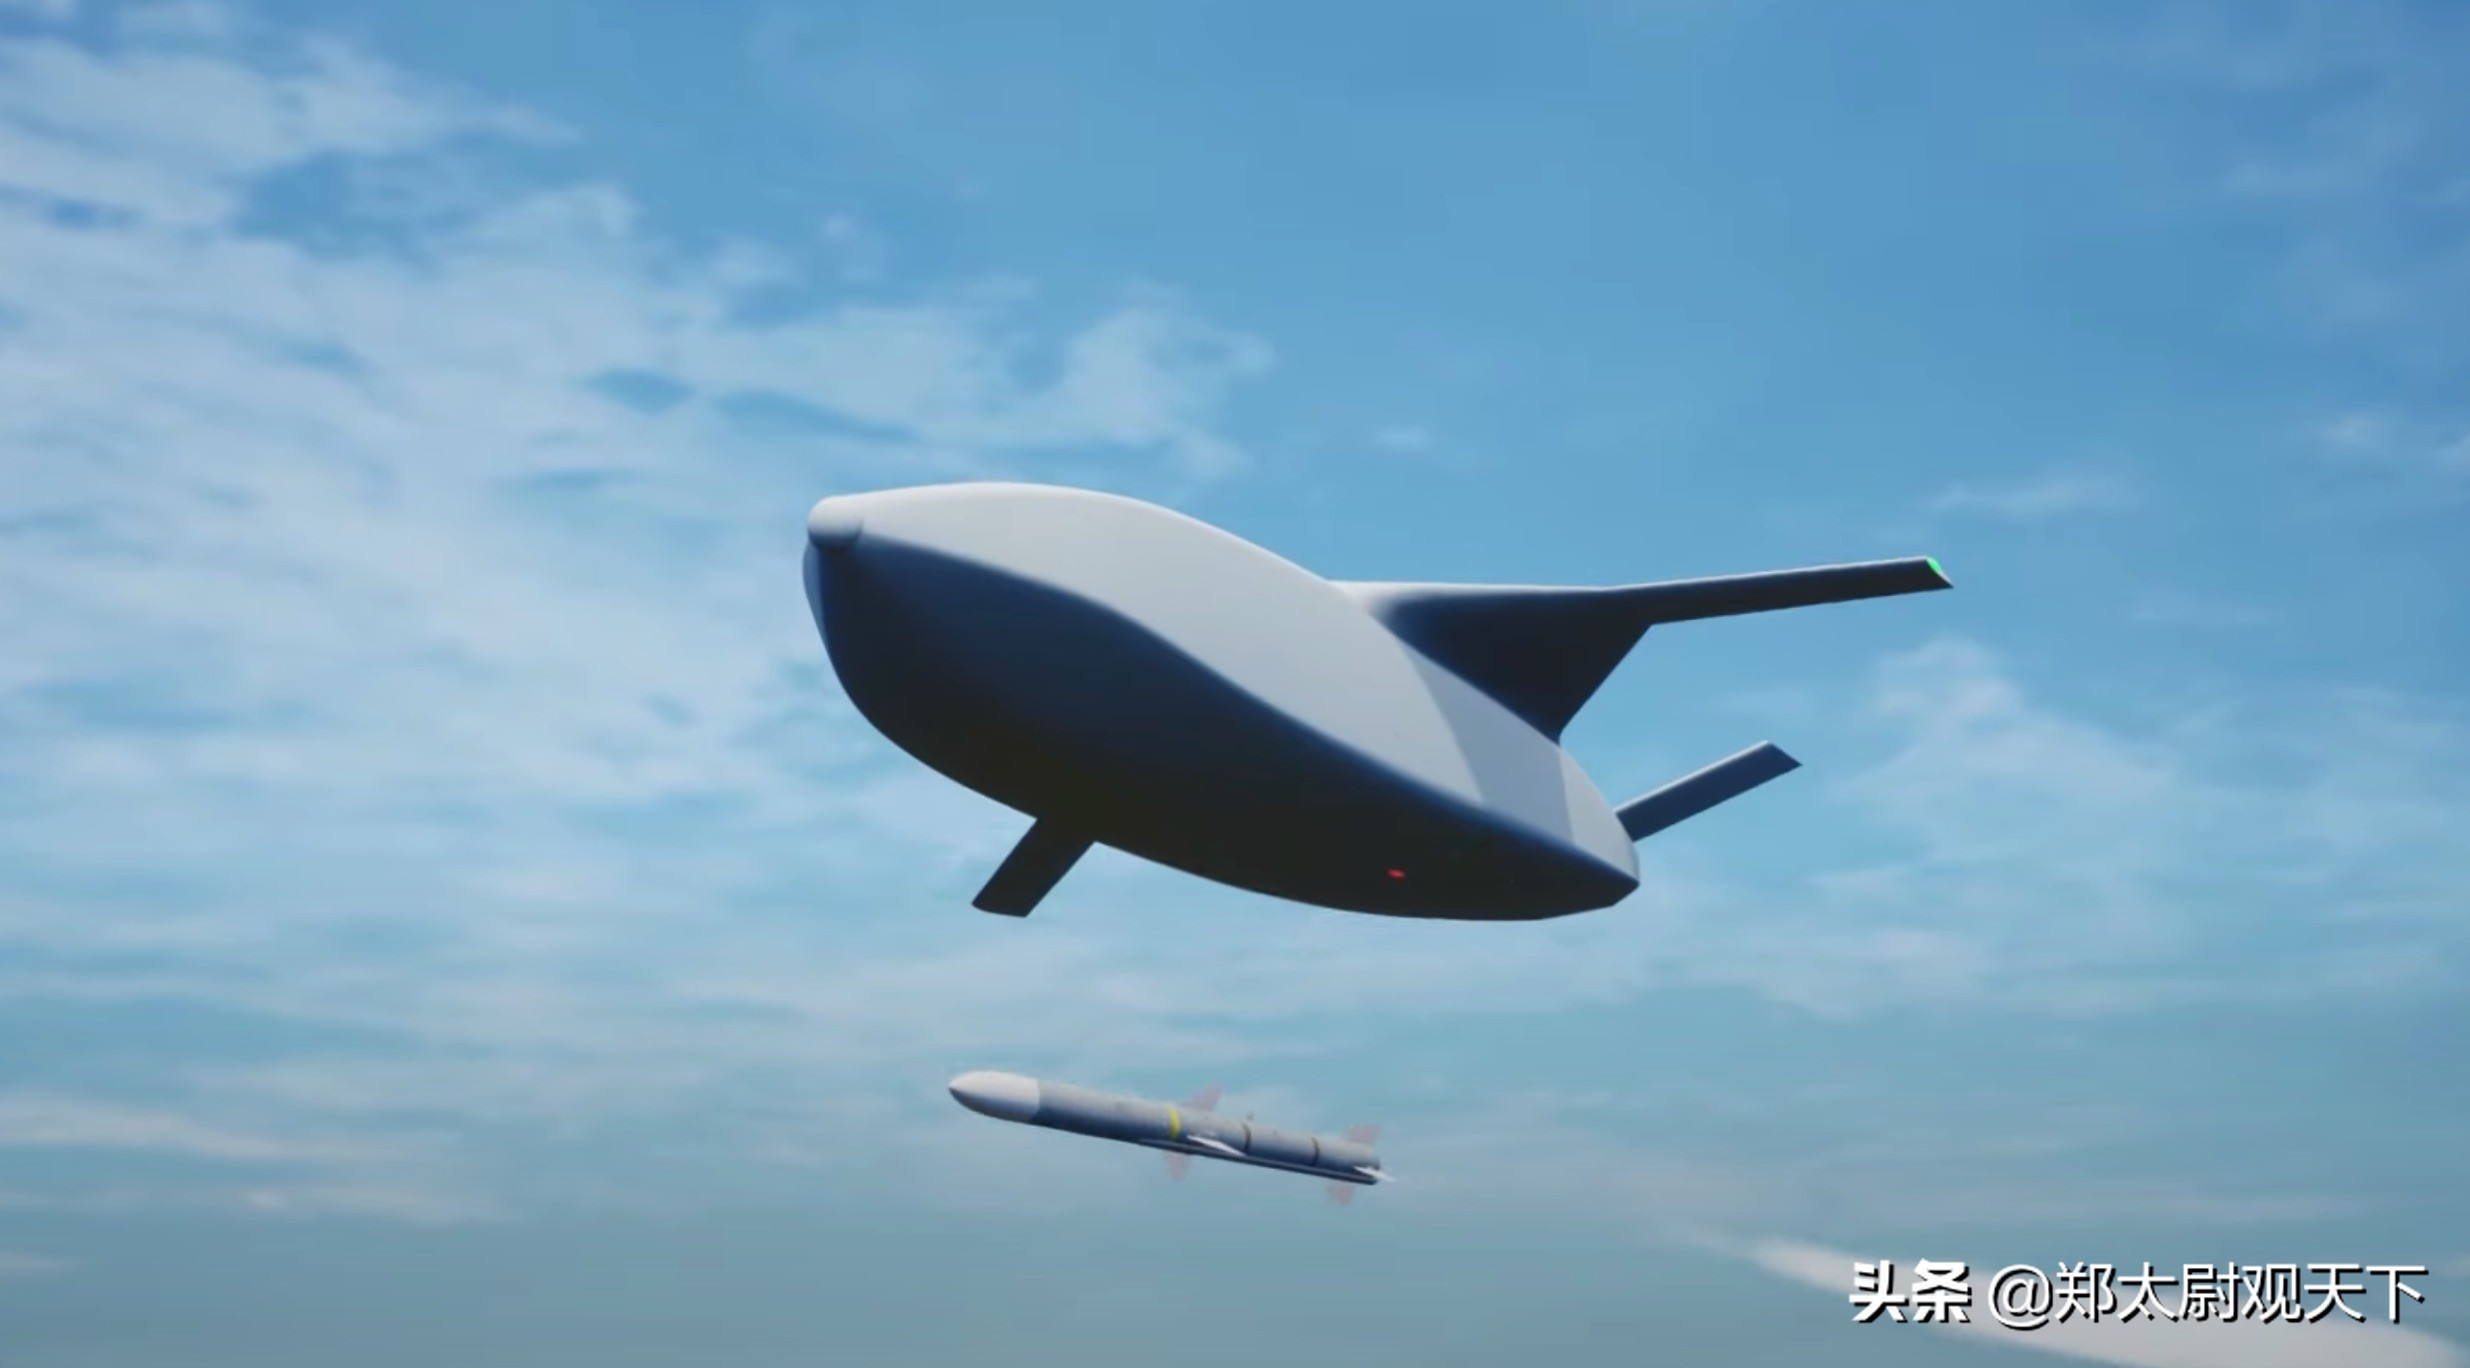 6架无人机组团空战，美军测试新AI系统！但对付大国竞争没戏？